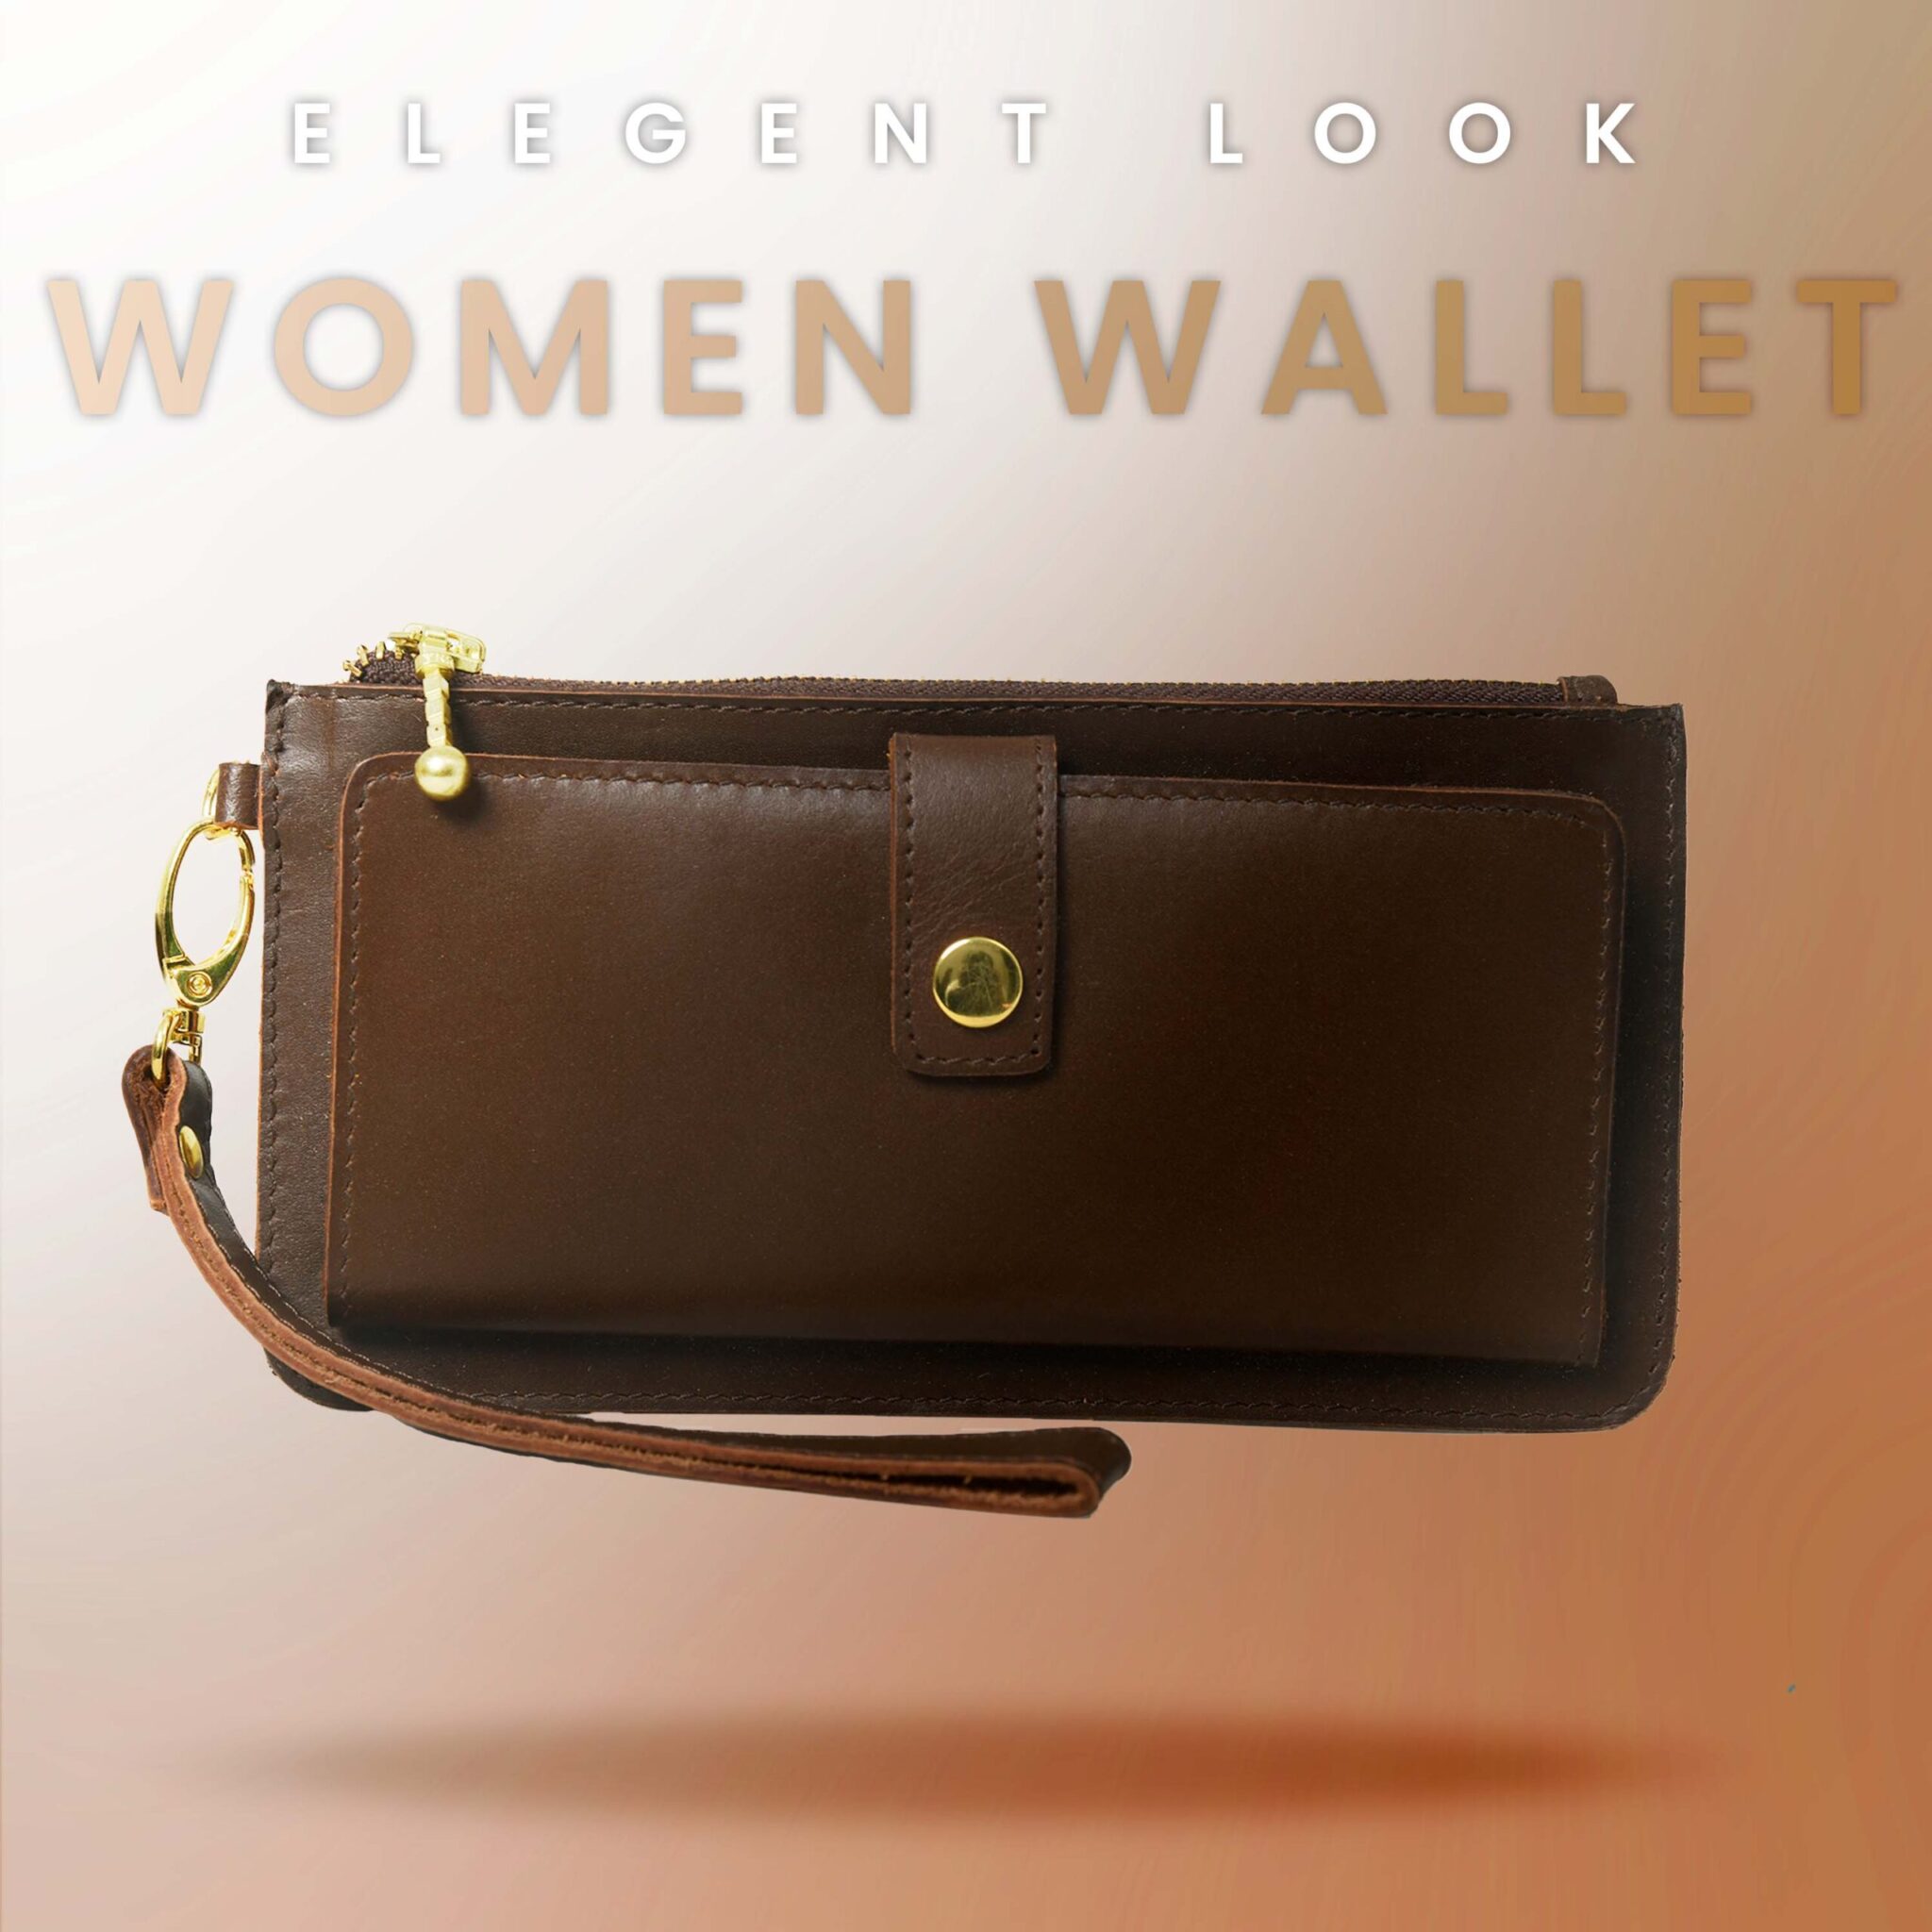 Woman Wallet